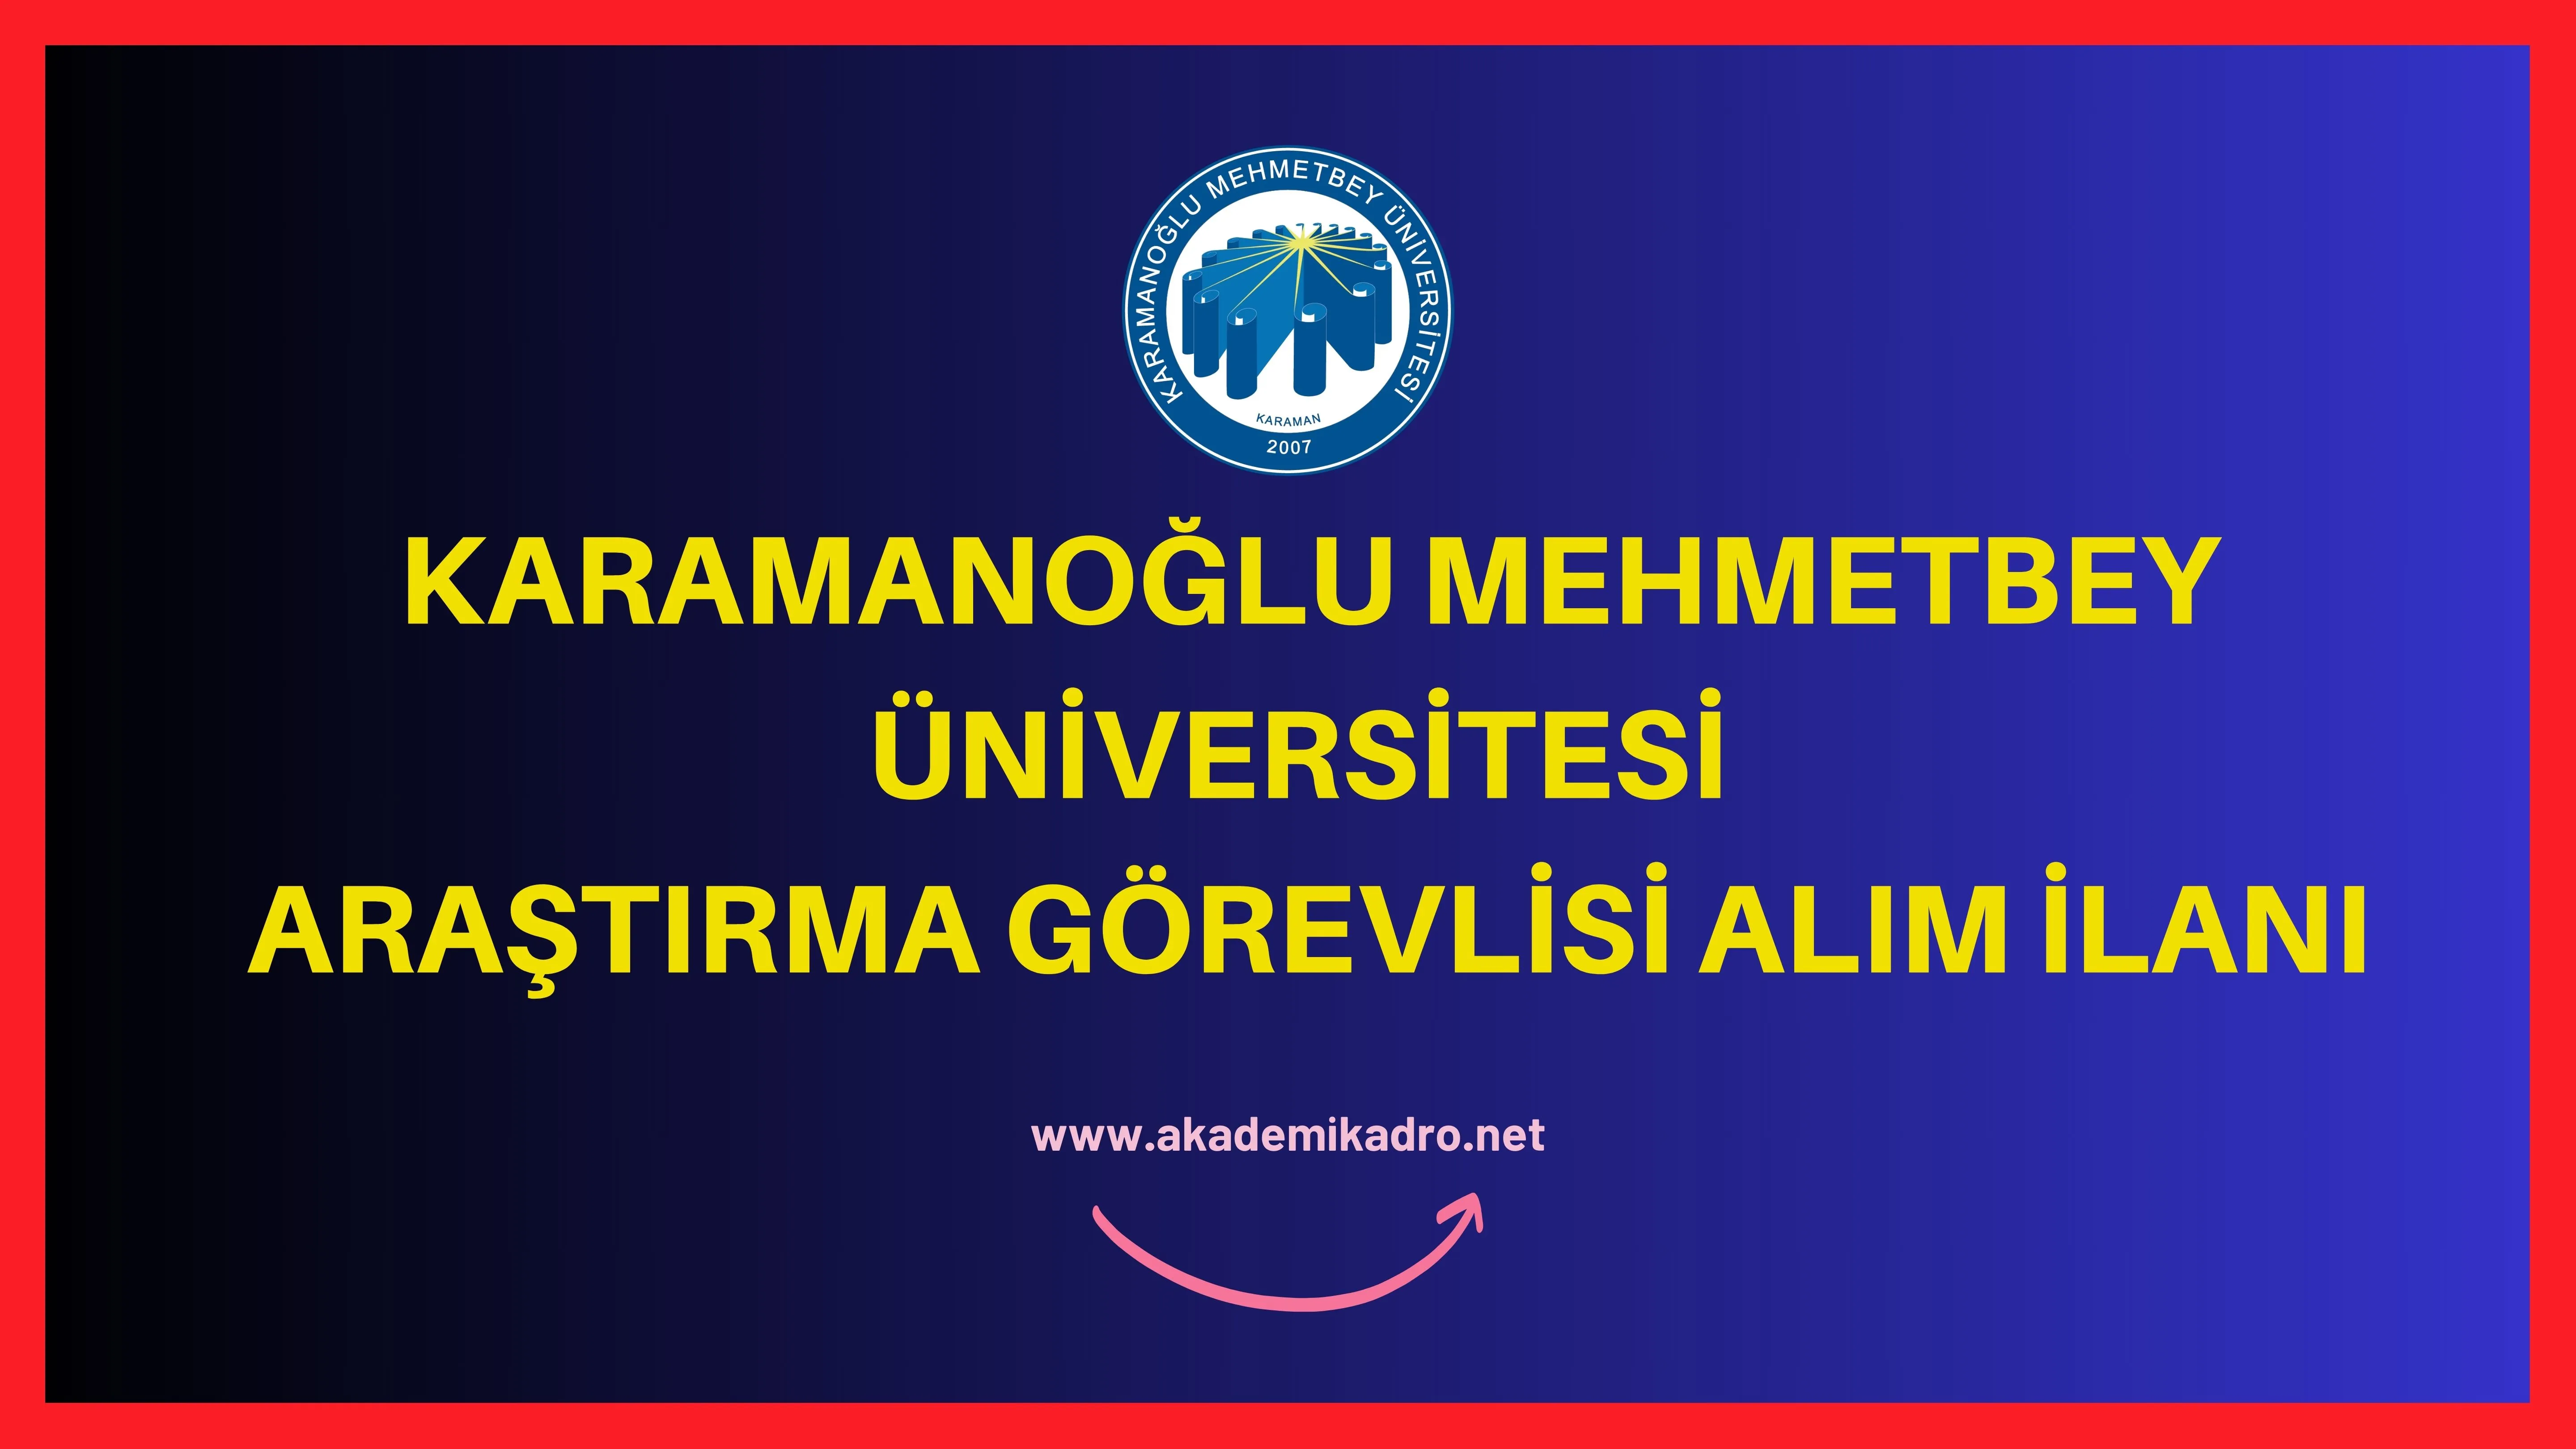 Karamanoğlu Mehmetbey Üniversitesi 9 araştırma görevlisi alacaktır. Son başvuru tarihi 23 Ekim 2023